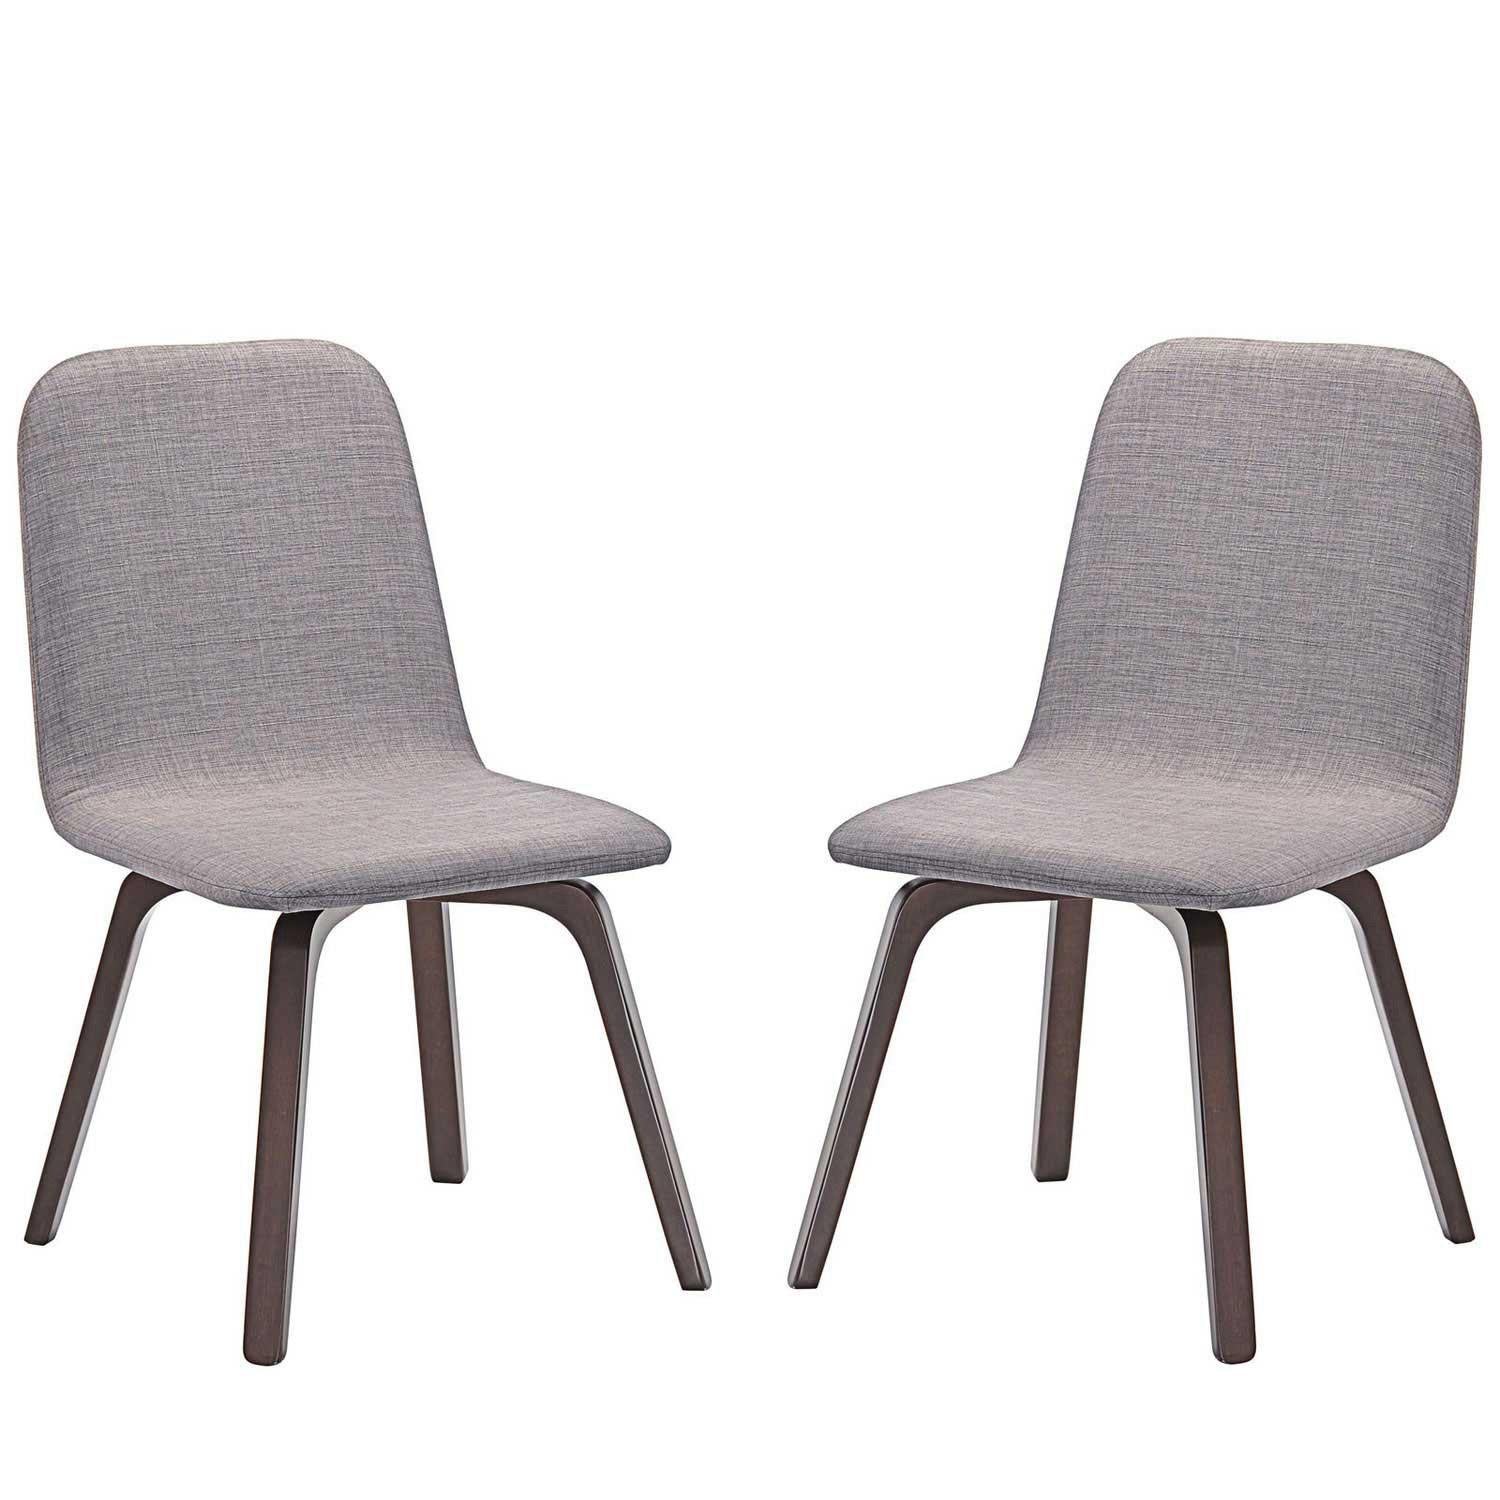 Modway Assert Dining Side Chair Set of 2 - Walnut Gray